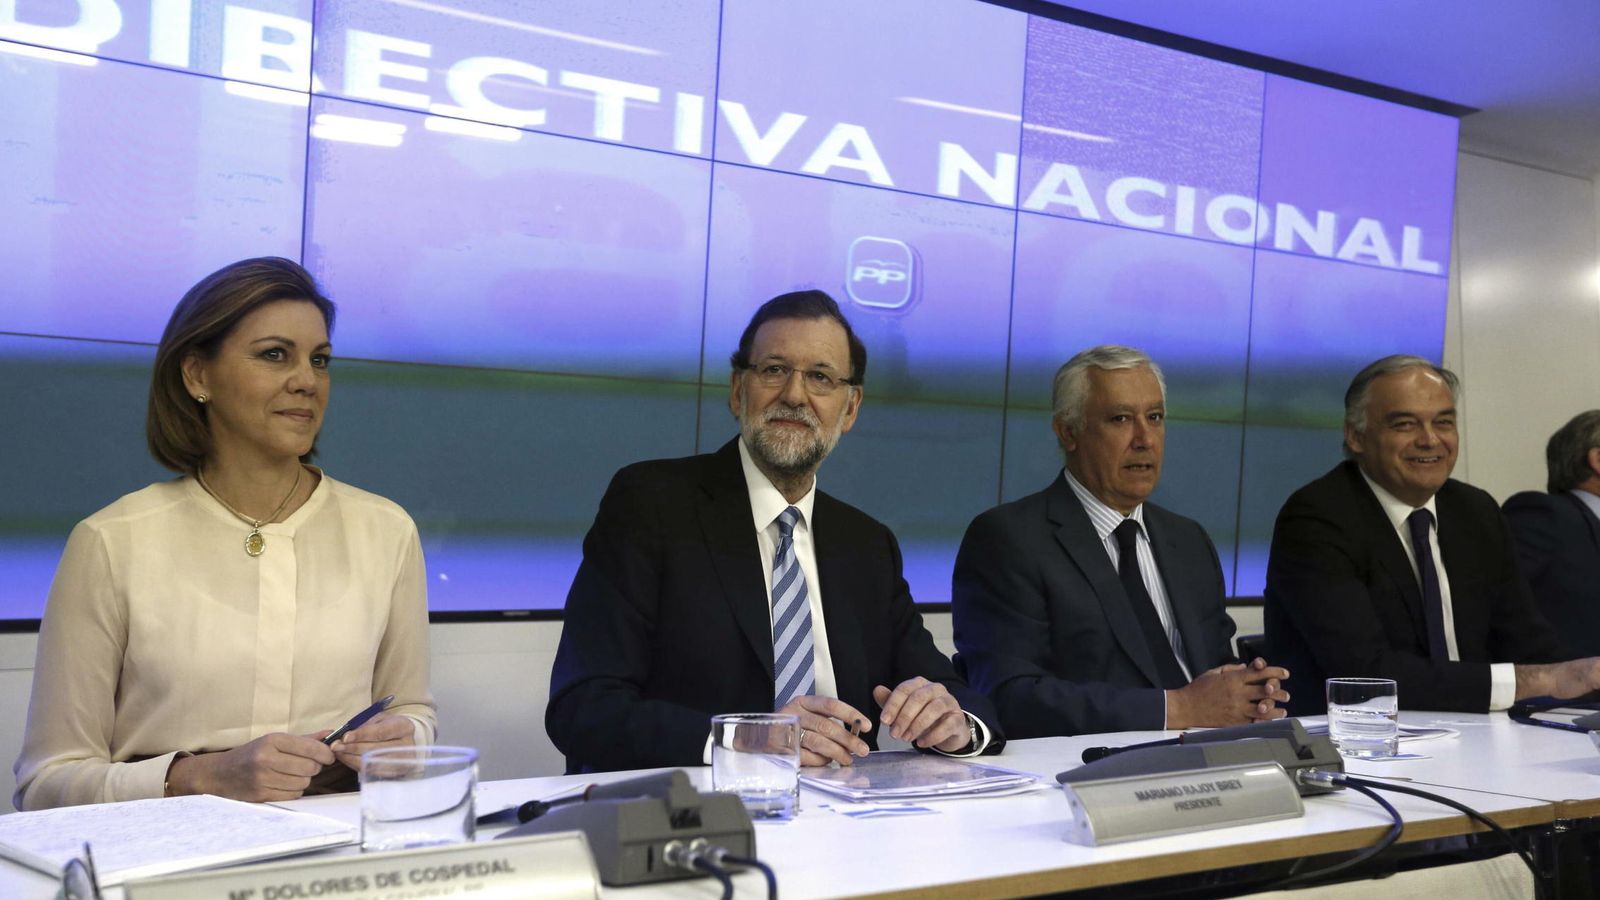 Foto: La reunión de la Junta Directiva Nacional del PP celebrada en Madrid el 7 de marzo de 2015. (EFE)